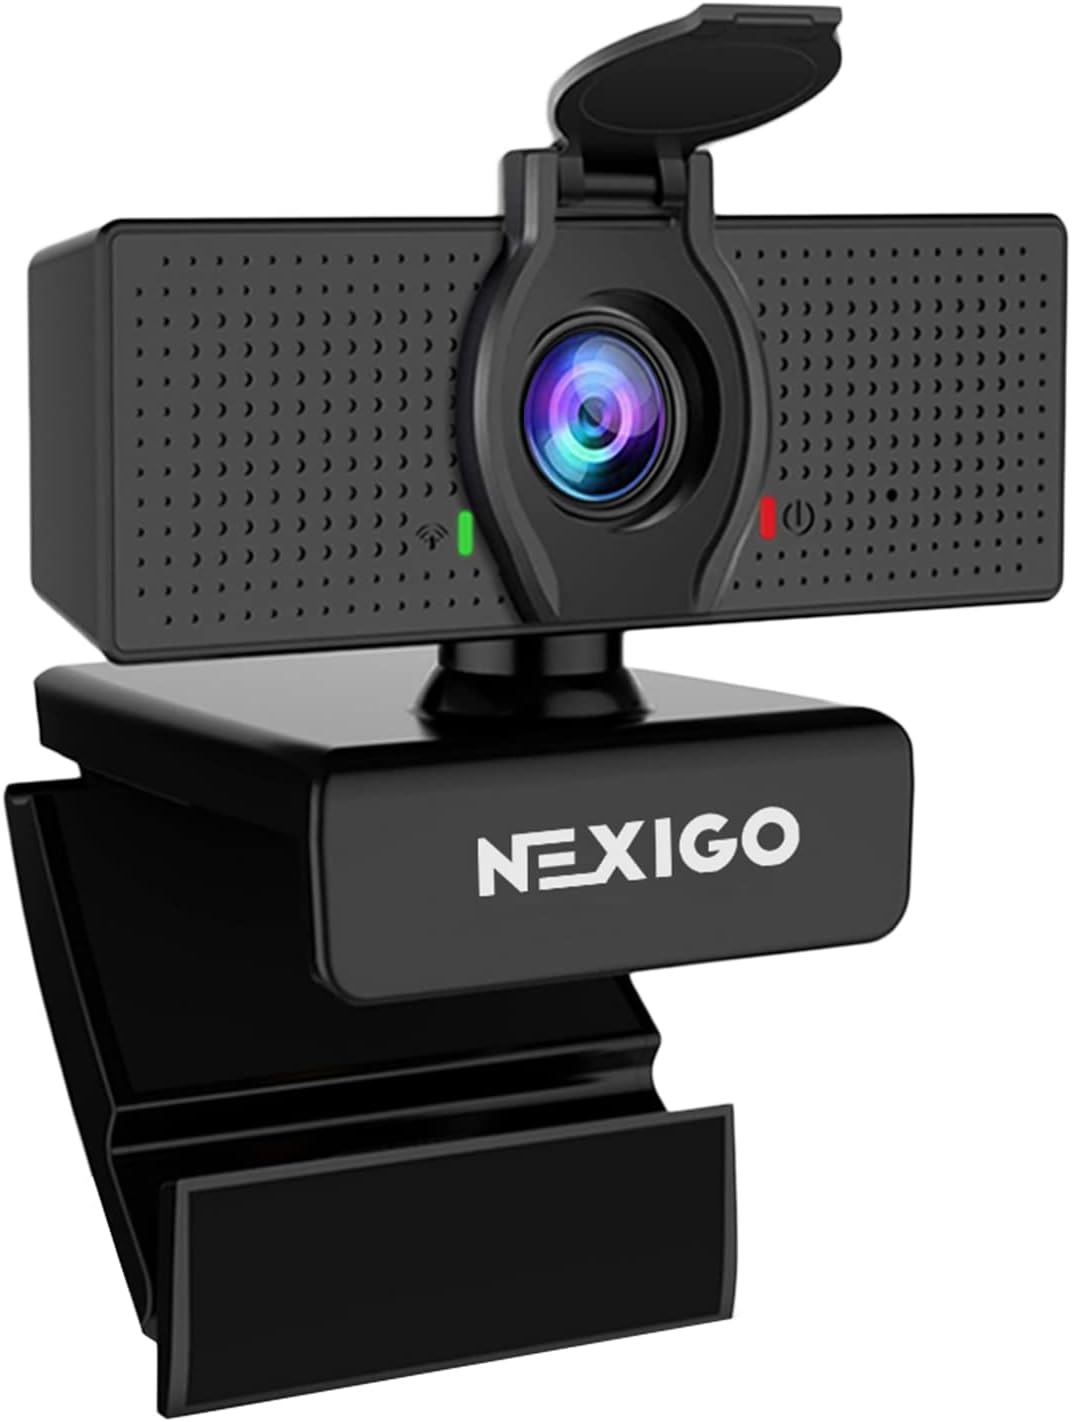 Best Web Cam: Top 5 Web Cameras for Crisp Video Calls